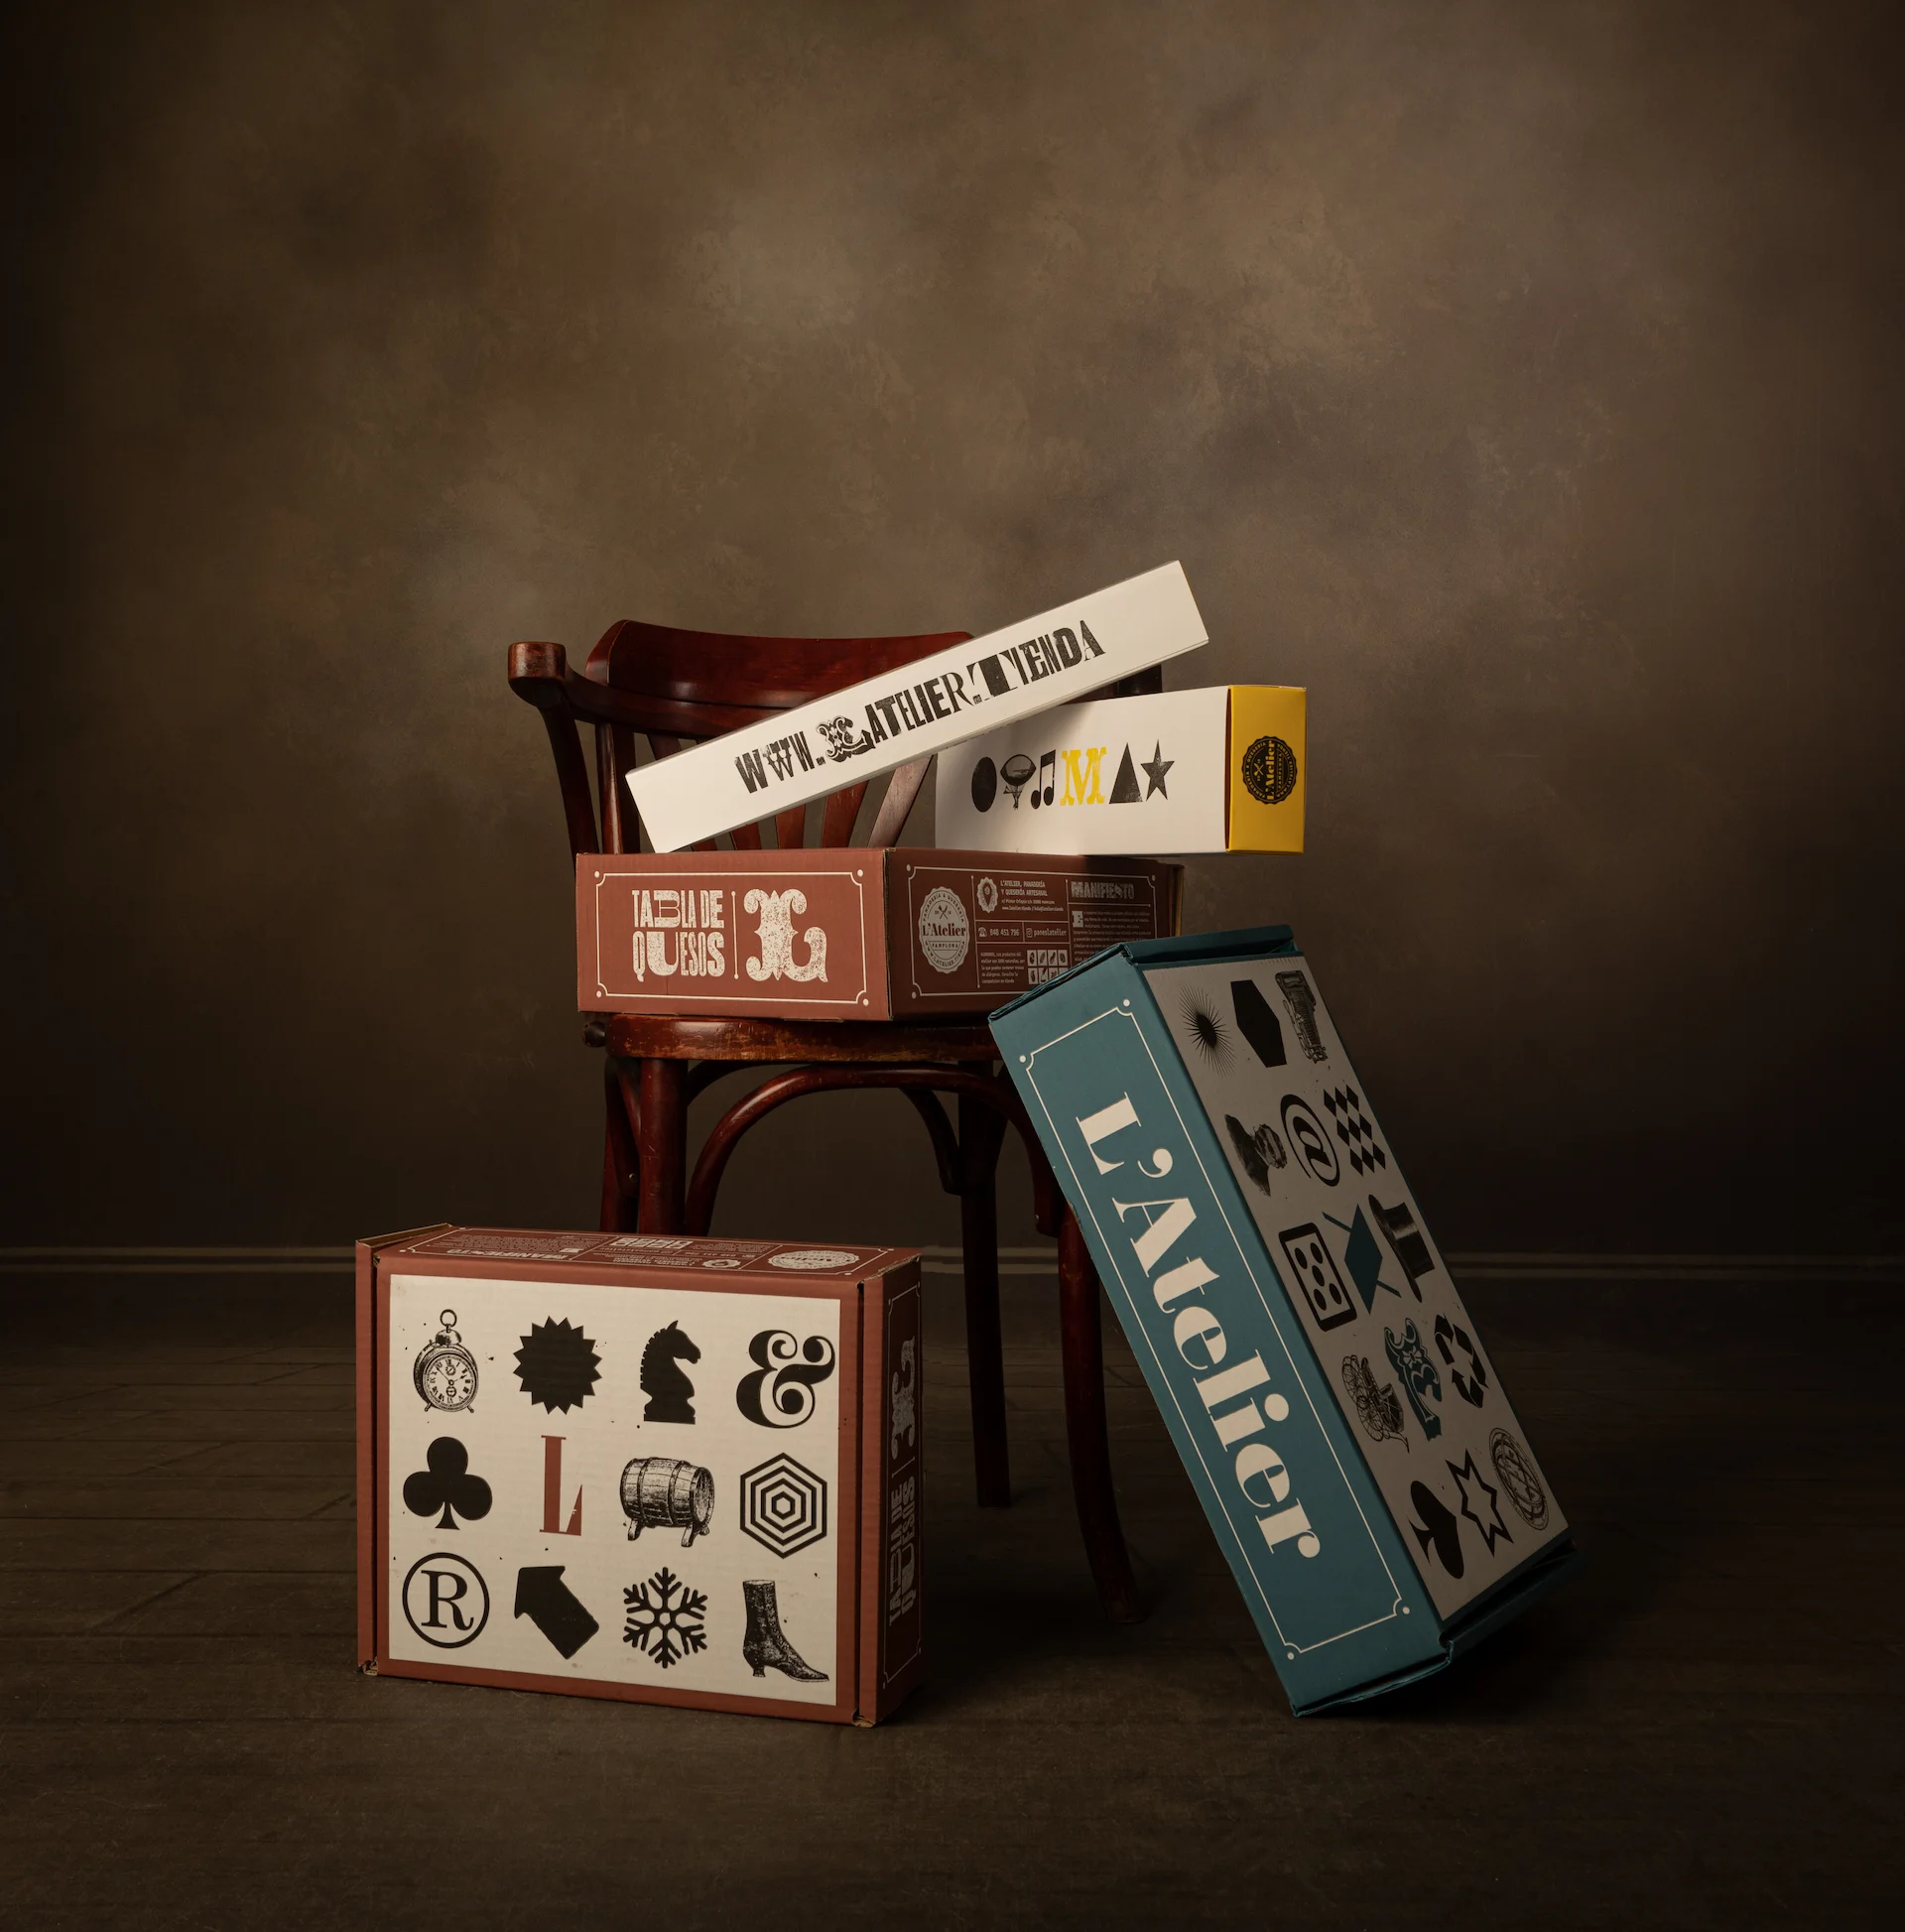 Fotografía de varias cajas apiladas con el diseño de packaging de quesos L'Atelier con tipografía e iconografía de letterpress